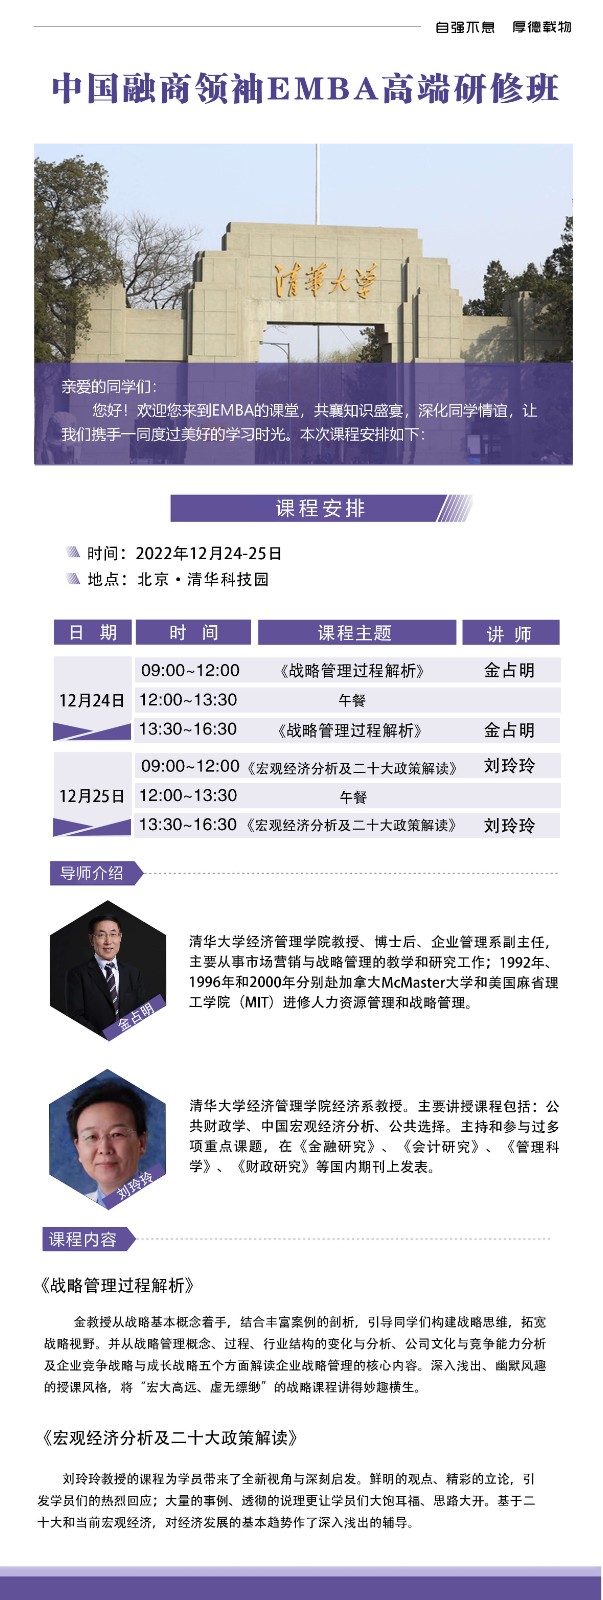 2022年12月中国融商领袖emba高端研修班课表